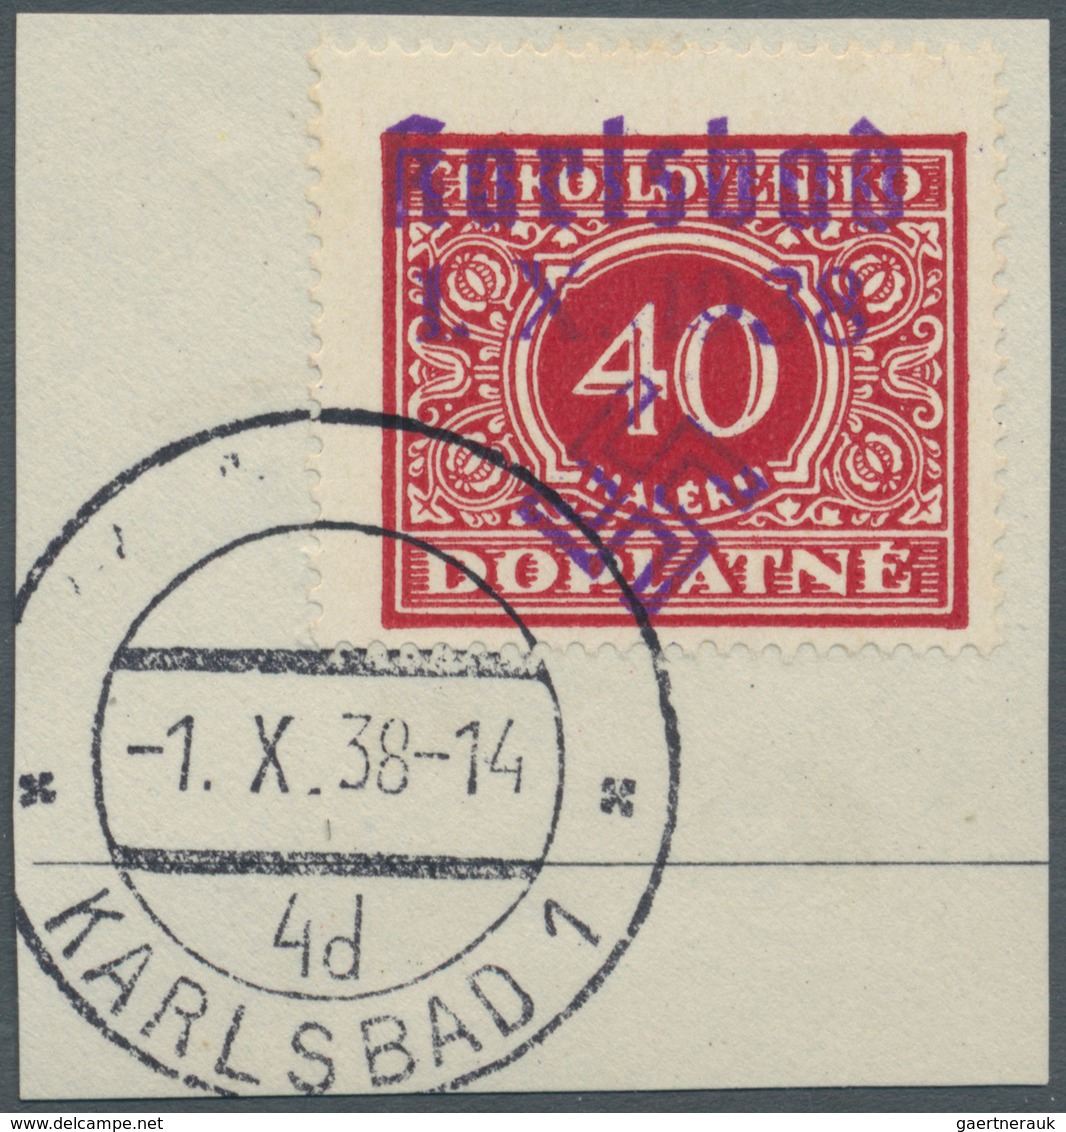 Sudetenland - Karlsbad: 1938, 40 H. Portomarke Mit Ersttagsstempel "KARLSBAD 4d 1.X.38" Auf Briefstü - Sudetenland